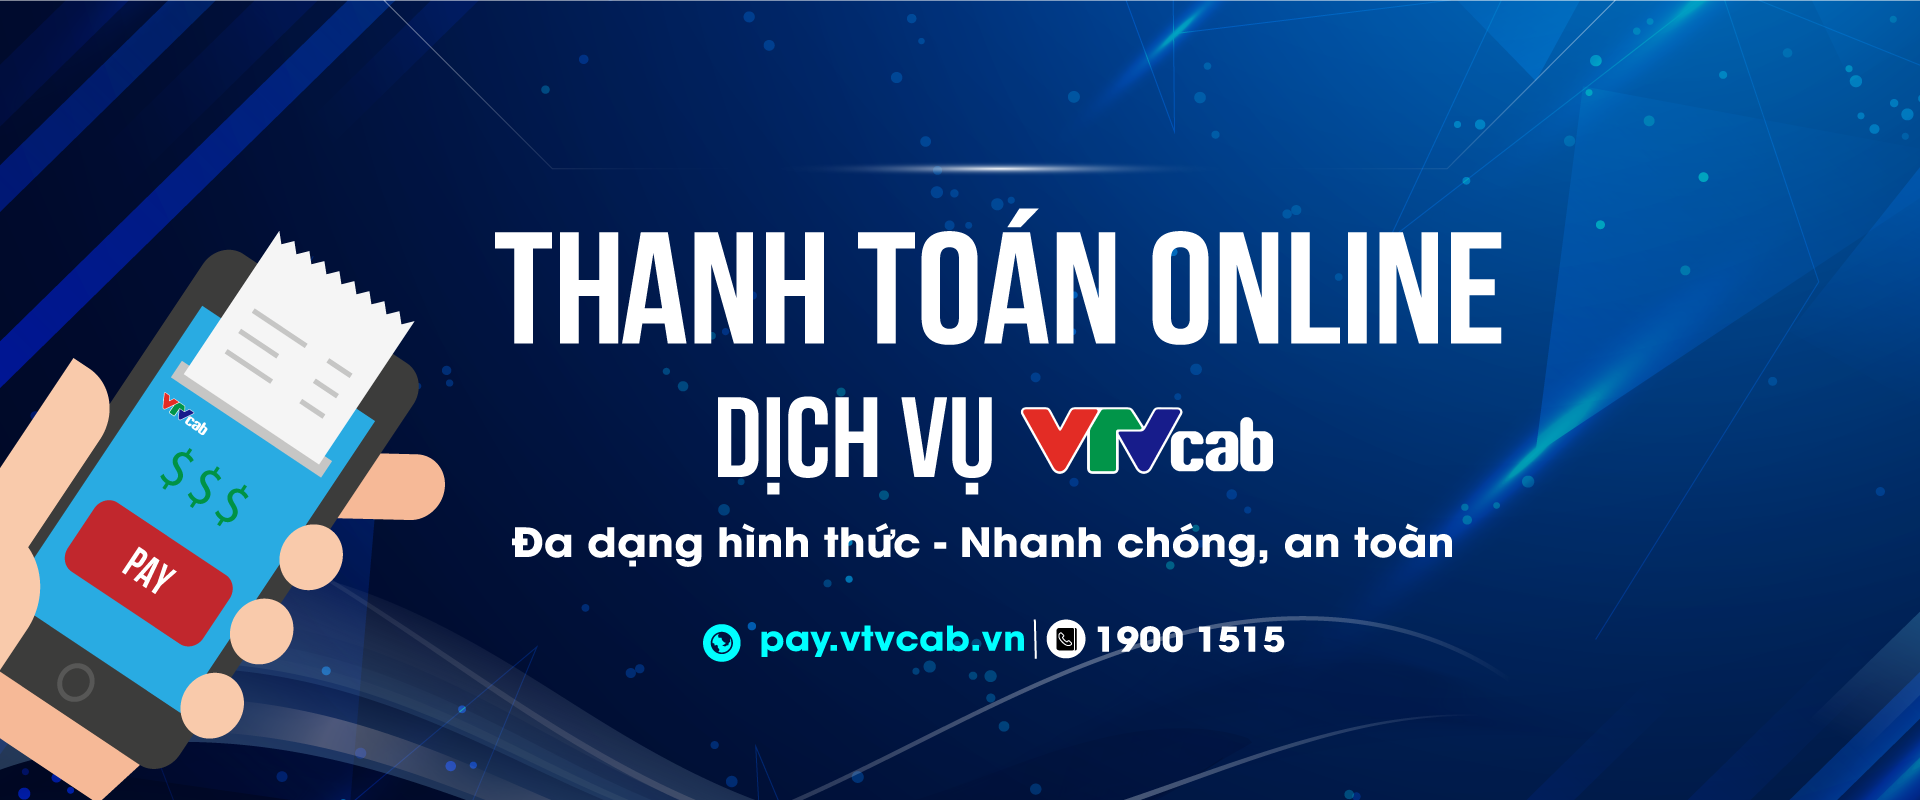 Thanh toán online trên VTVcab